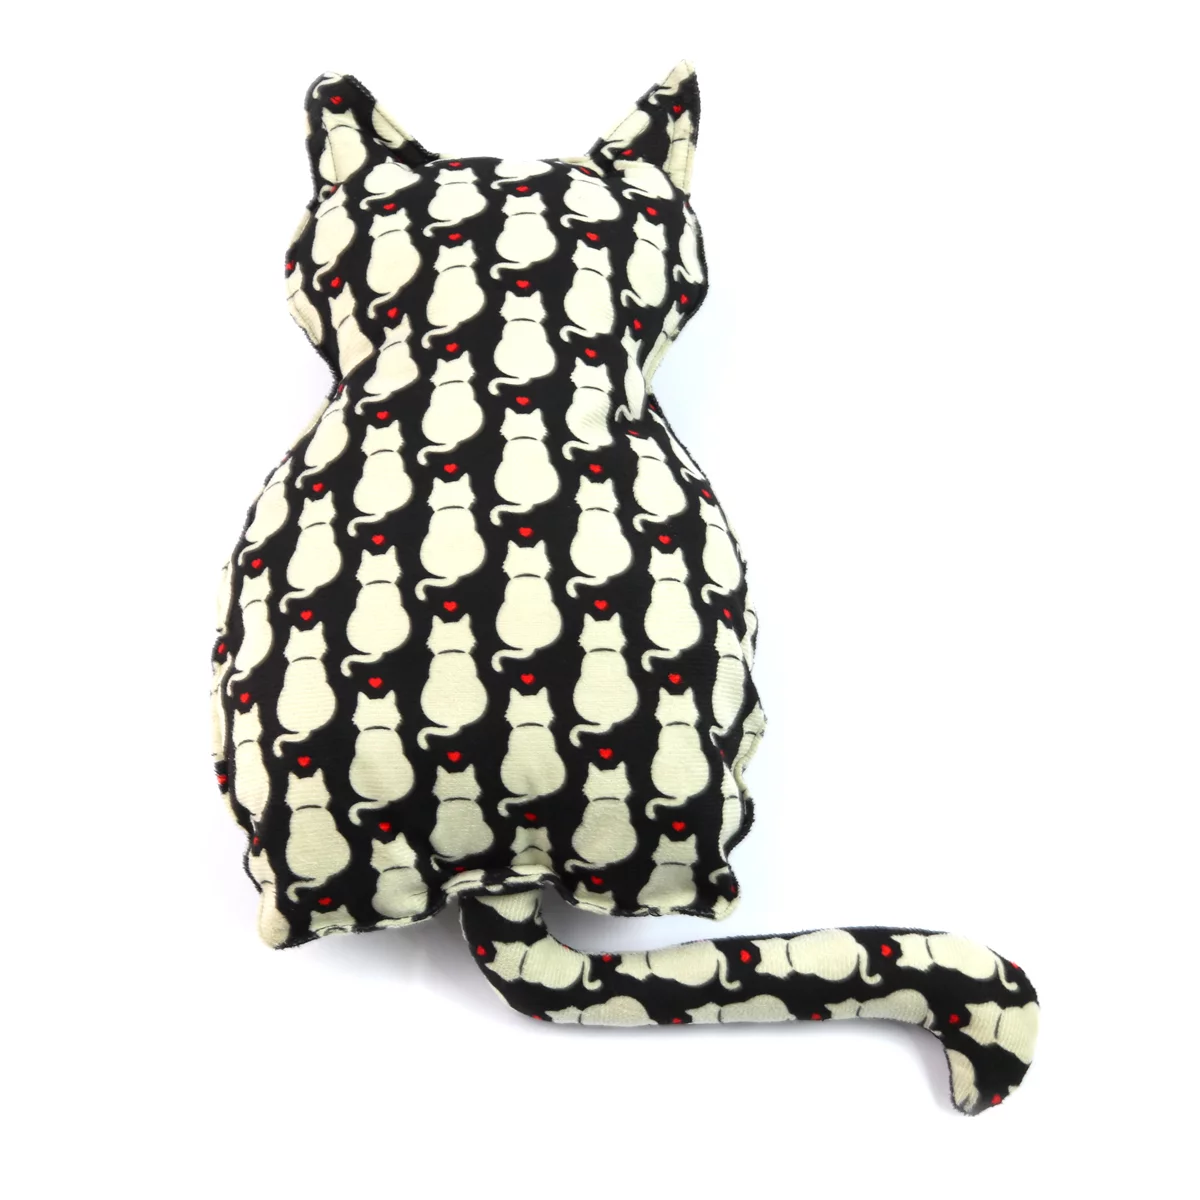 Almofada Pet em formato de gato ou osso para cama ou sofá